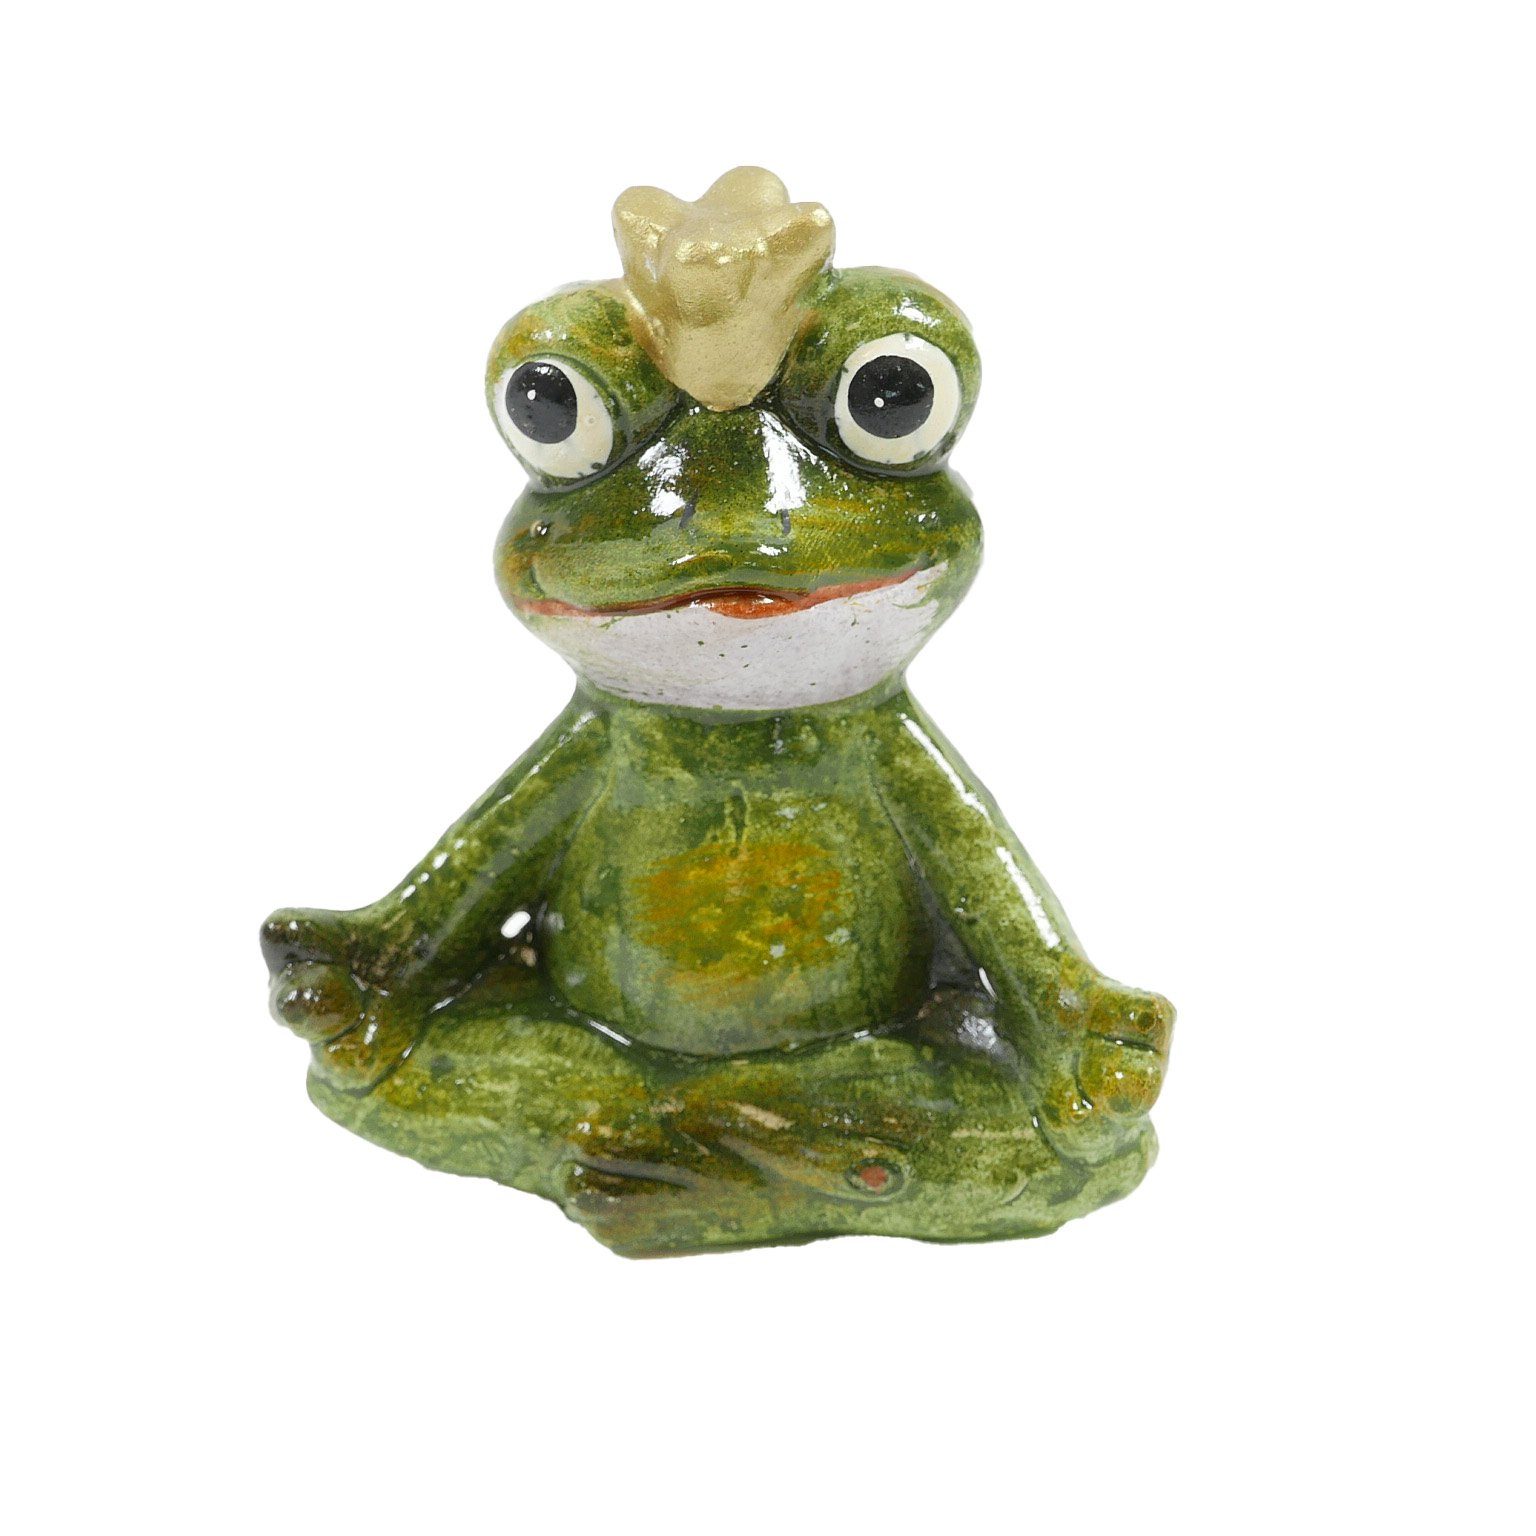 B&S Dekofigur Frosch grün Keramik 8,3x4,5x9,1 cm